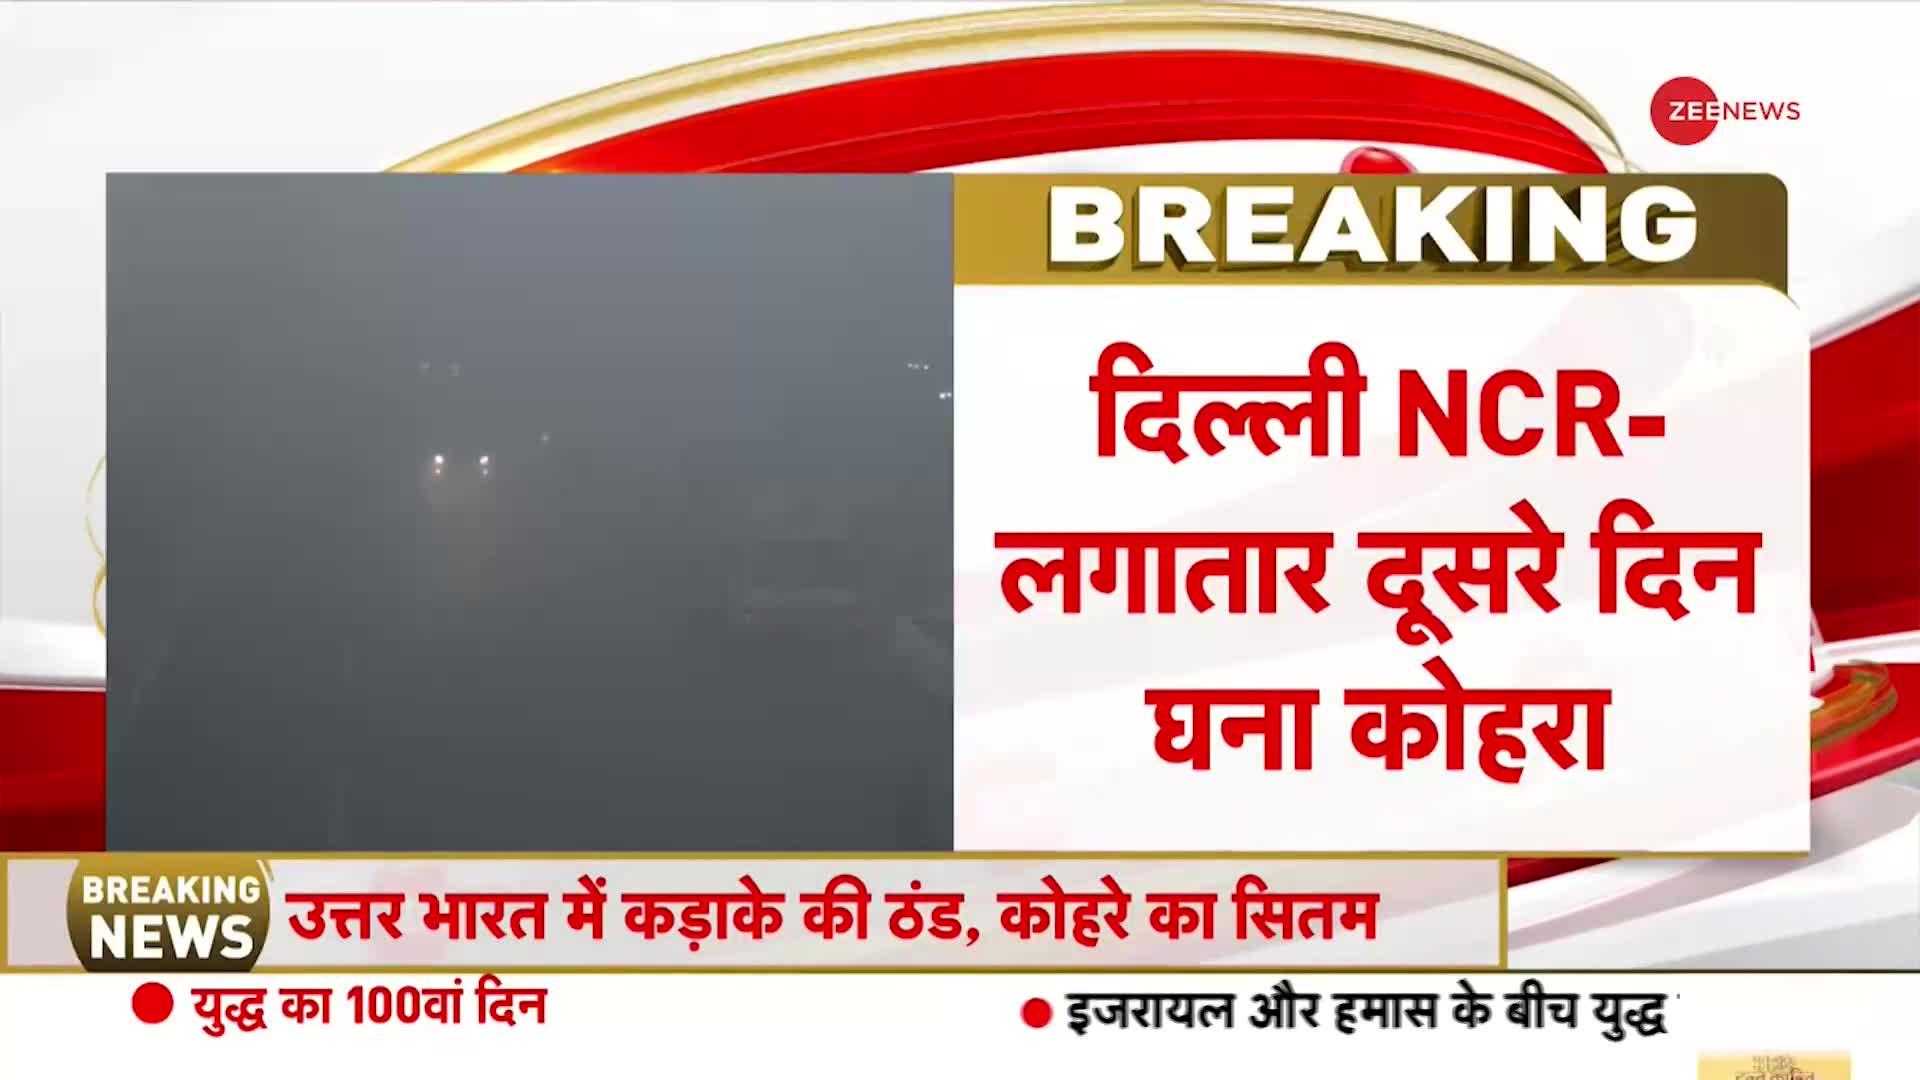 Delhi Weather Update: दिल्ली NCR में लगातार दूसरे दिन भयंकर कोहरा | Winters